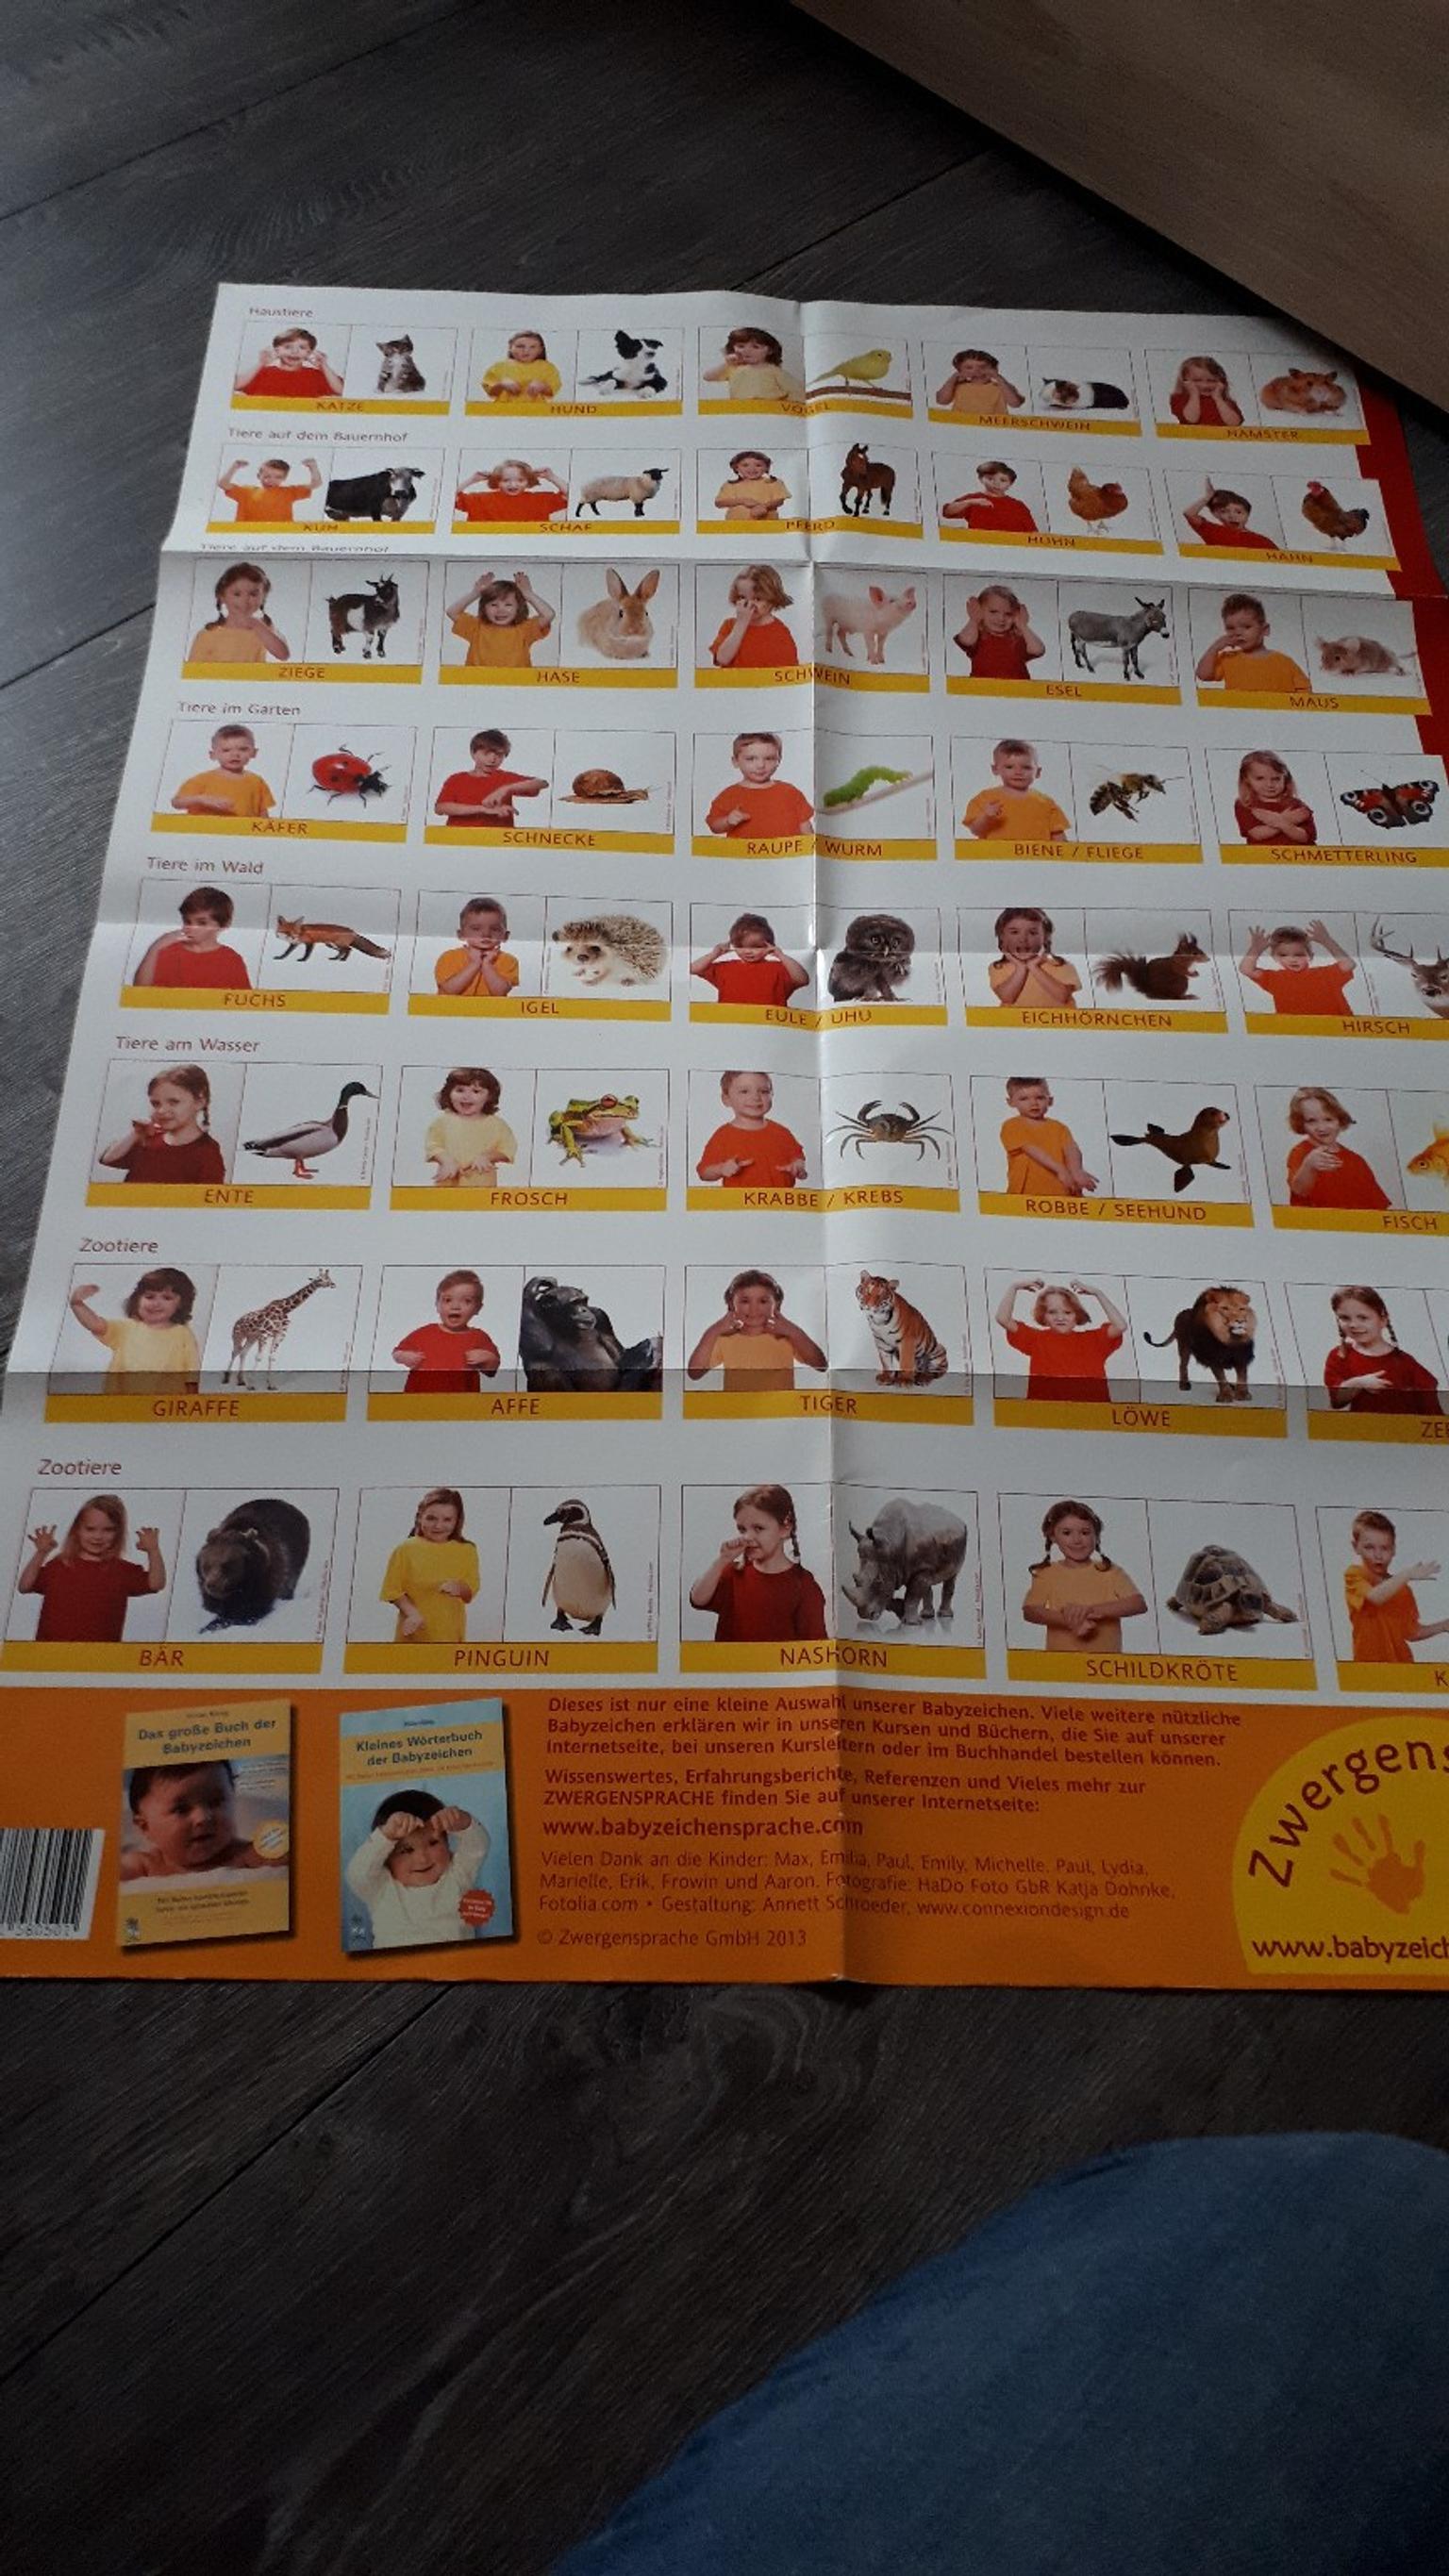 Kleines Worterbuch Der Babyzeichen 2 Poster In 3841 Windigsteig For 21 00 For Sale Shpock